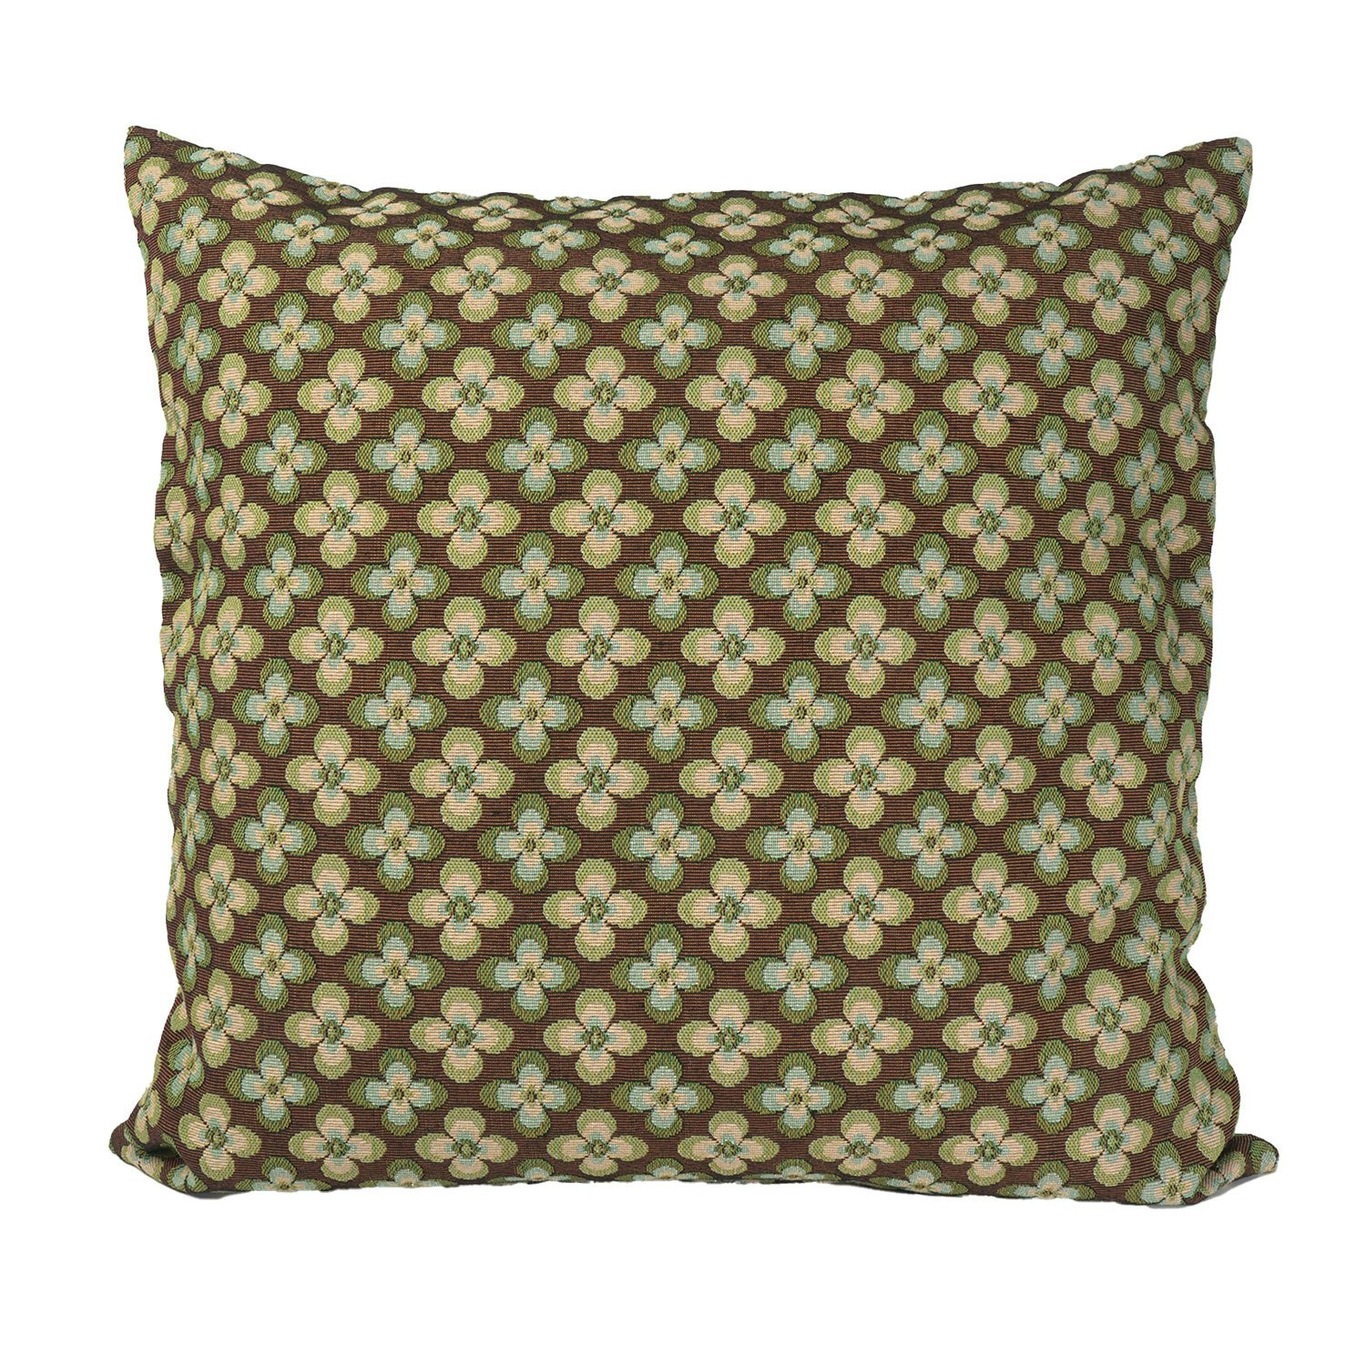 Clover Cushion Cover 50x50 cm, Green